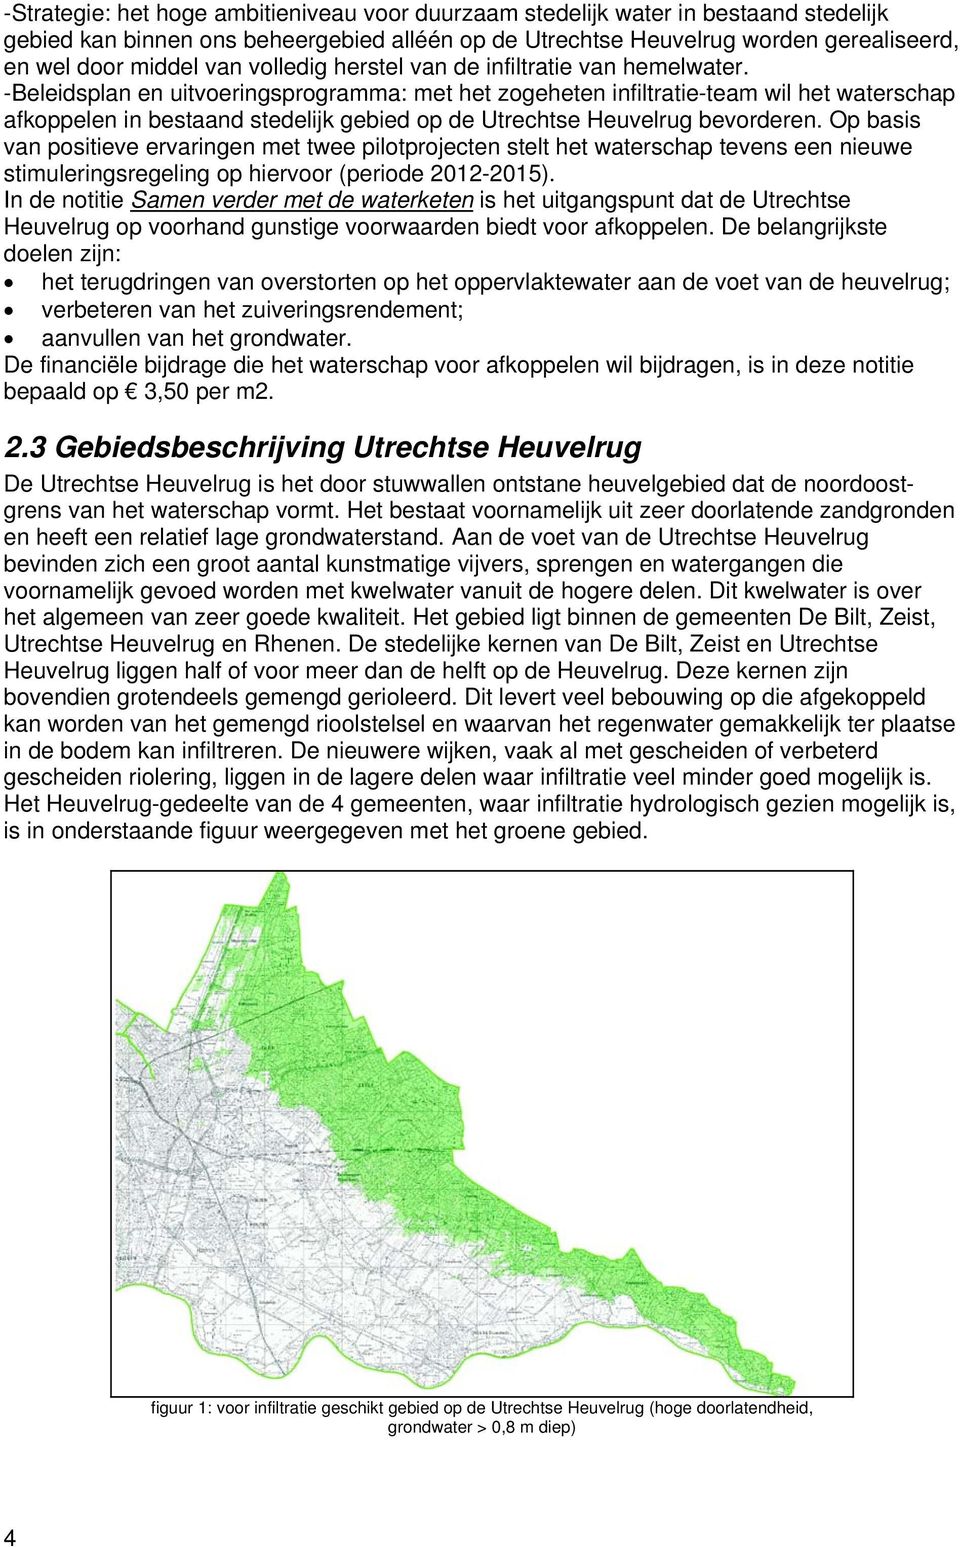 -Beleidsplan en uitvoeringsprogramma: met het zogeheten infiltratie-team wil het waterschap afkoppelen in bestaand stedelijk gebied op de Utrechtse Heuvelrug bevorderen.